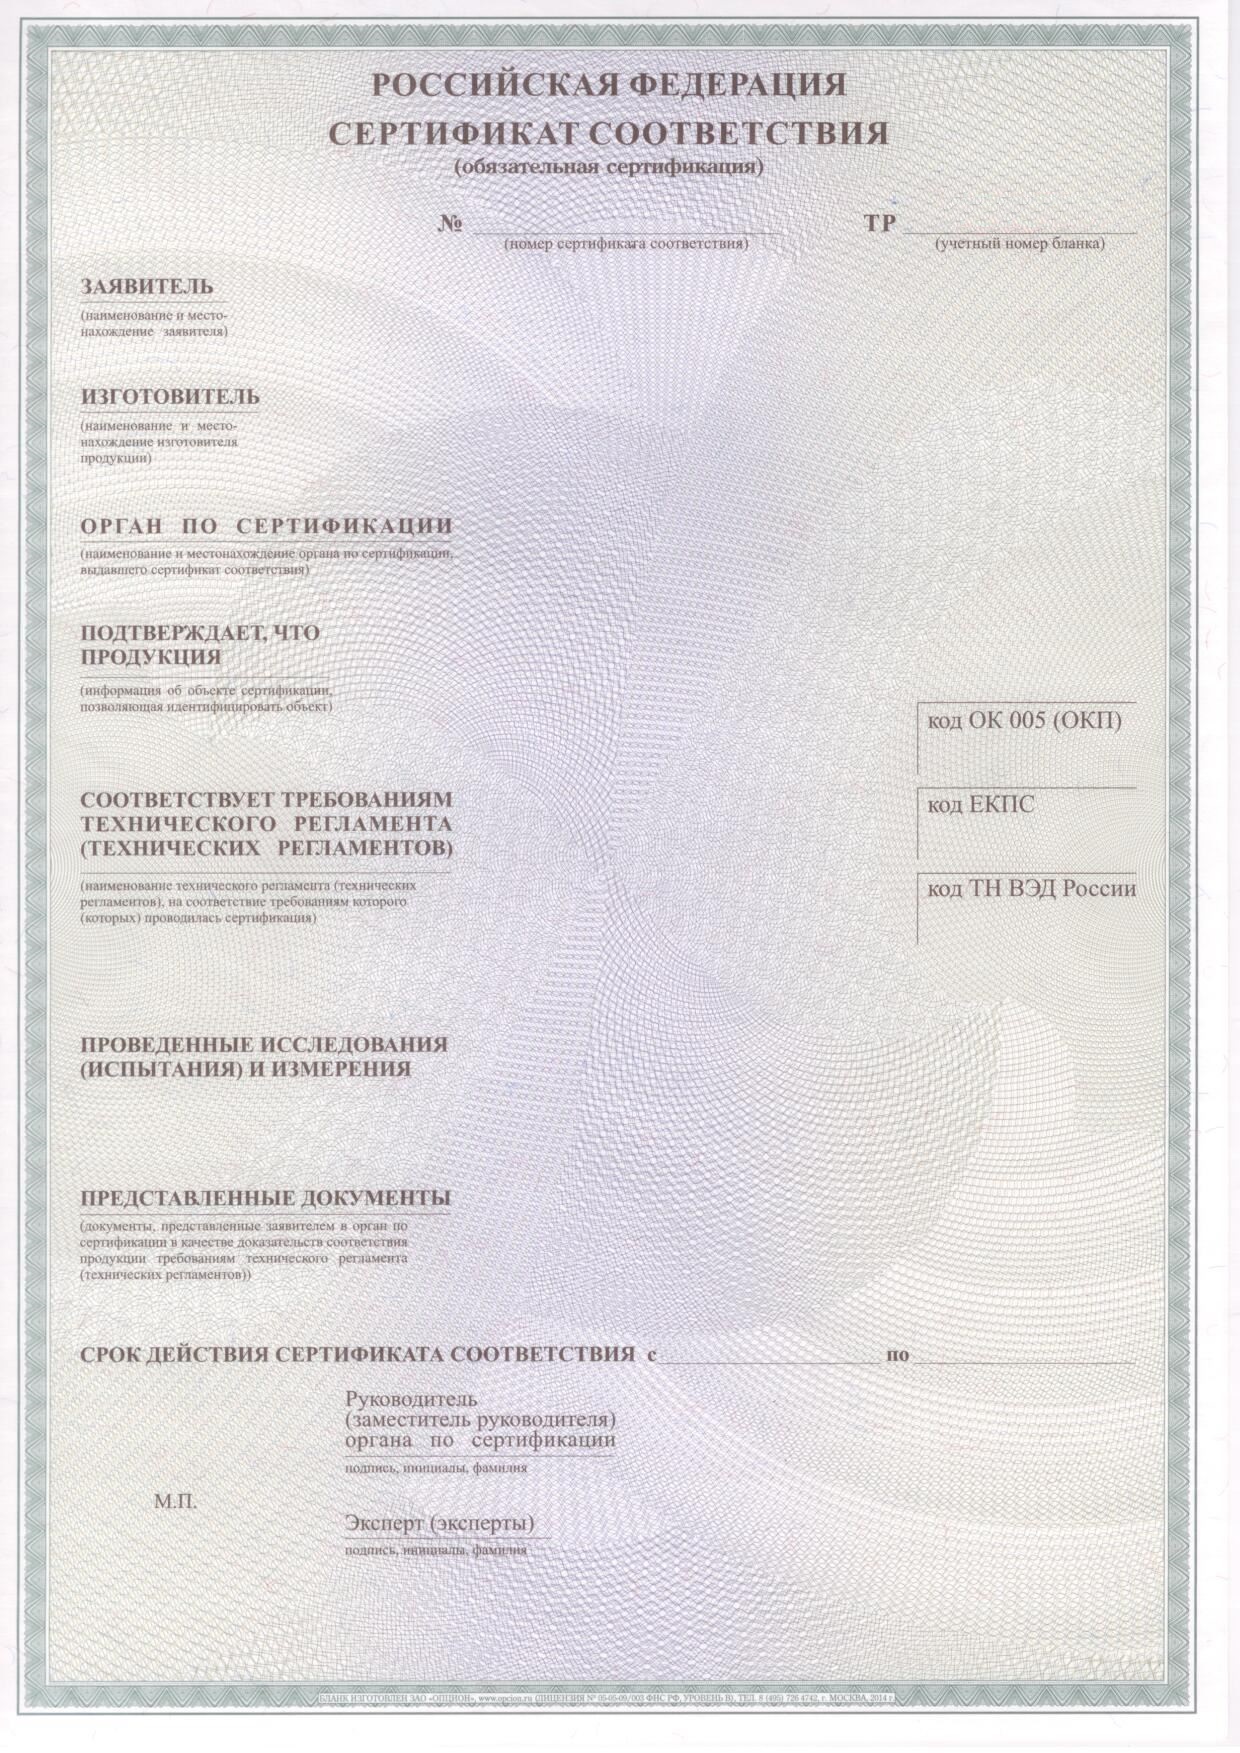 Сертификат соответствия образец